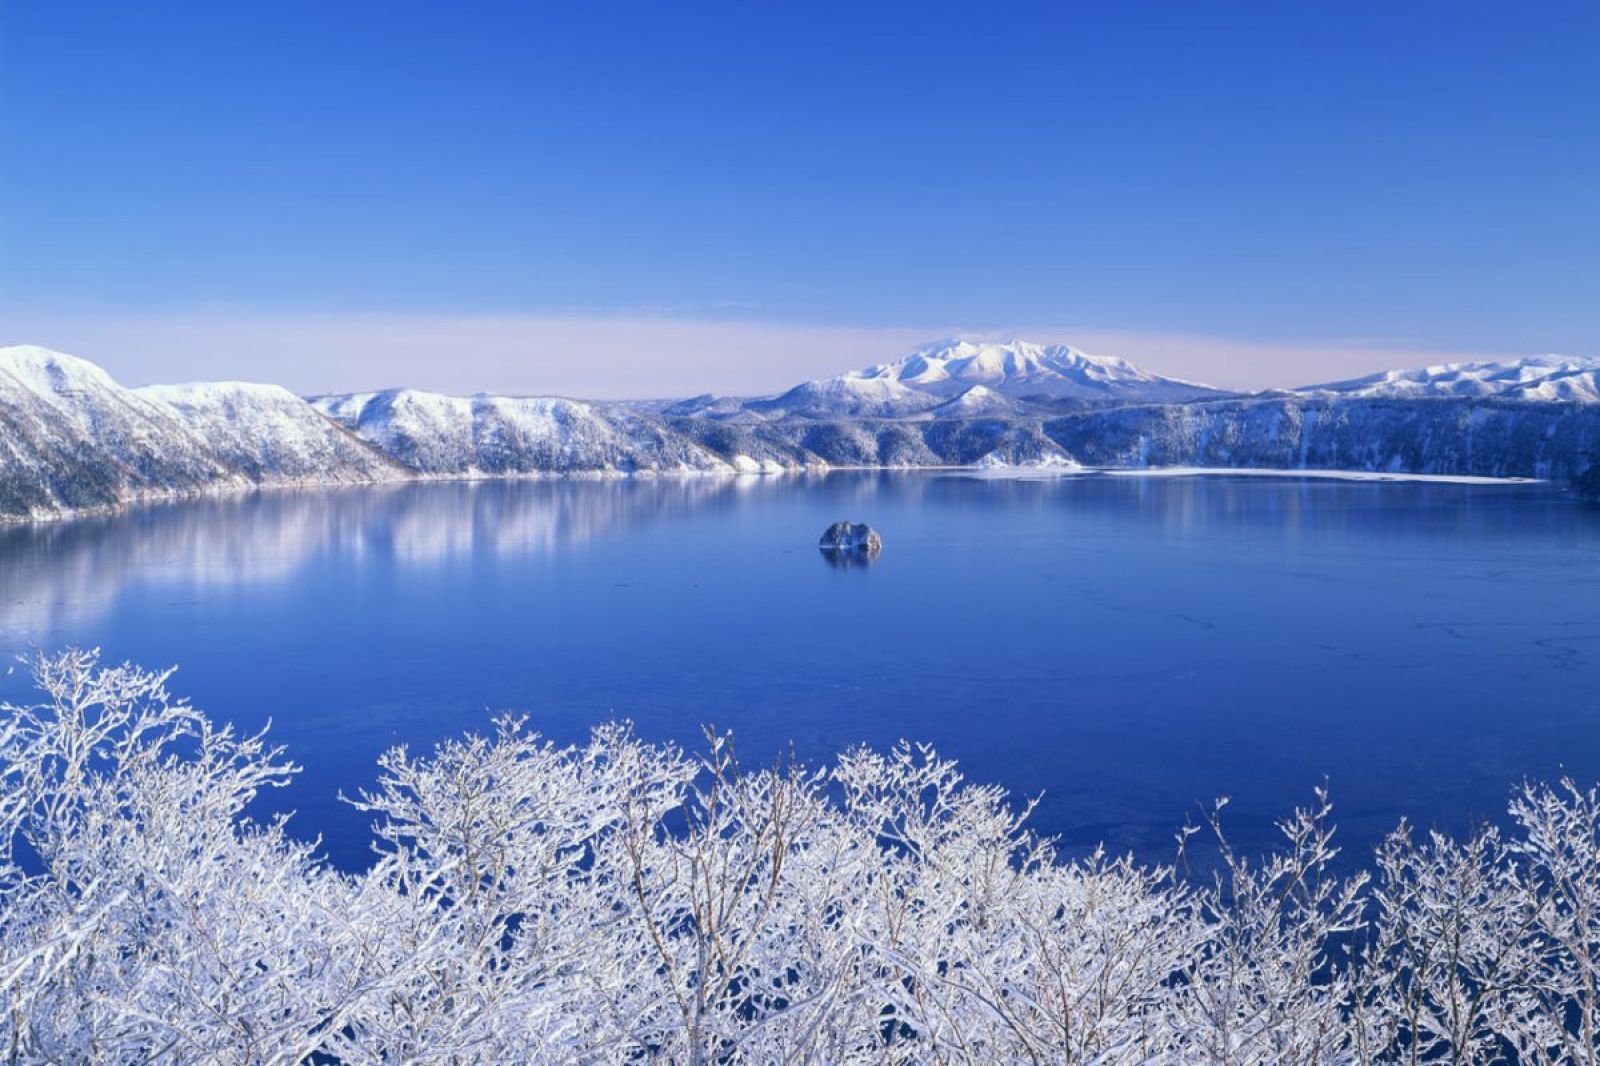 Hồ Mashu là một hồ miệng núi lửa ở Công viên quốc gia Akan, thu hút nhiều khách du lịch ghé thăm hồ nhất, bởi vậy, nó được coi là một trong số những hồ đẹp nhất Nhật Bản. Hồ Mashu cũng là một trong những hồ sâu nhất tại Nhật, mặt nước trong xanh, in bóng mây trời nhưng thường bị sương mù bao phủ. Khách thăm không được phép đi xuống hồ.